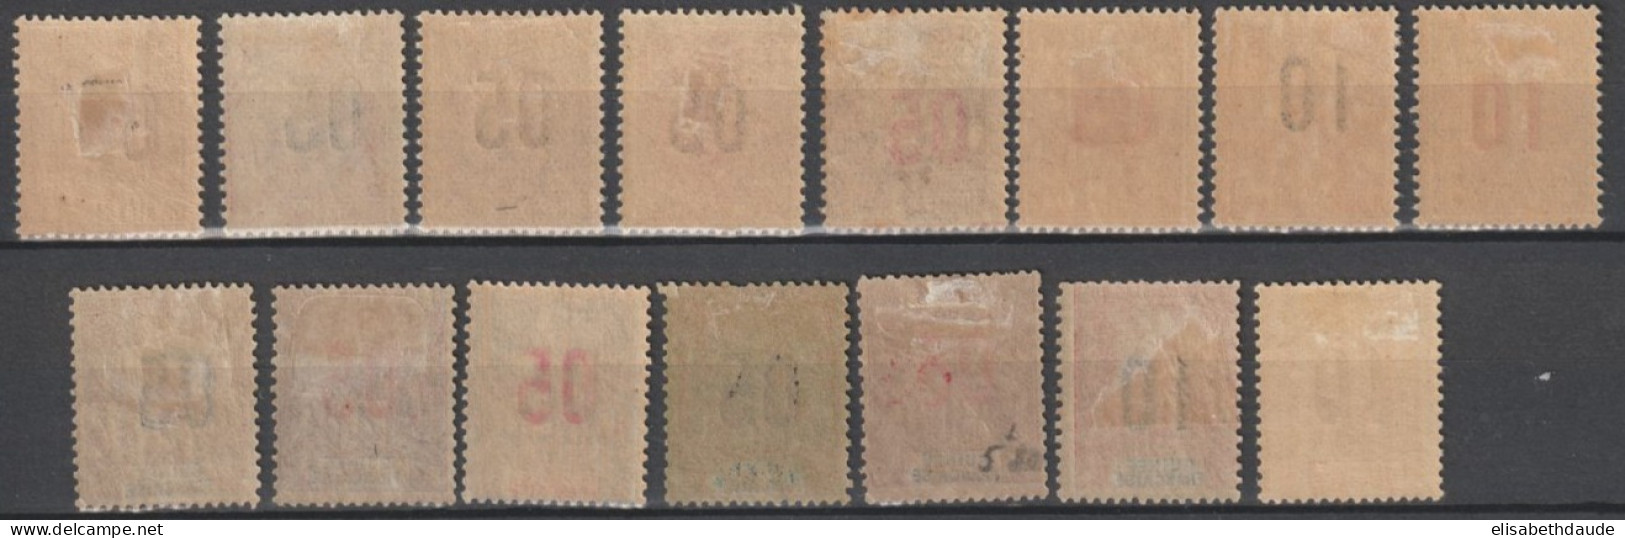 GUINEE - 1912 - SERIES COMPLETES YVERT N° 48/62 * MH - COTE = 48.5 EUR. - Unused Stamps